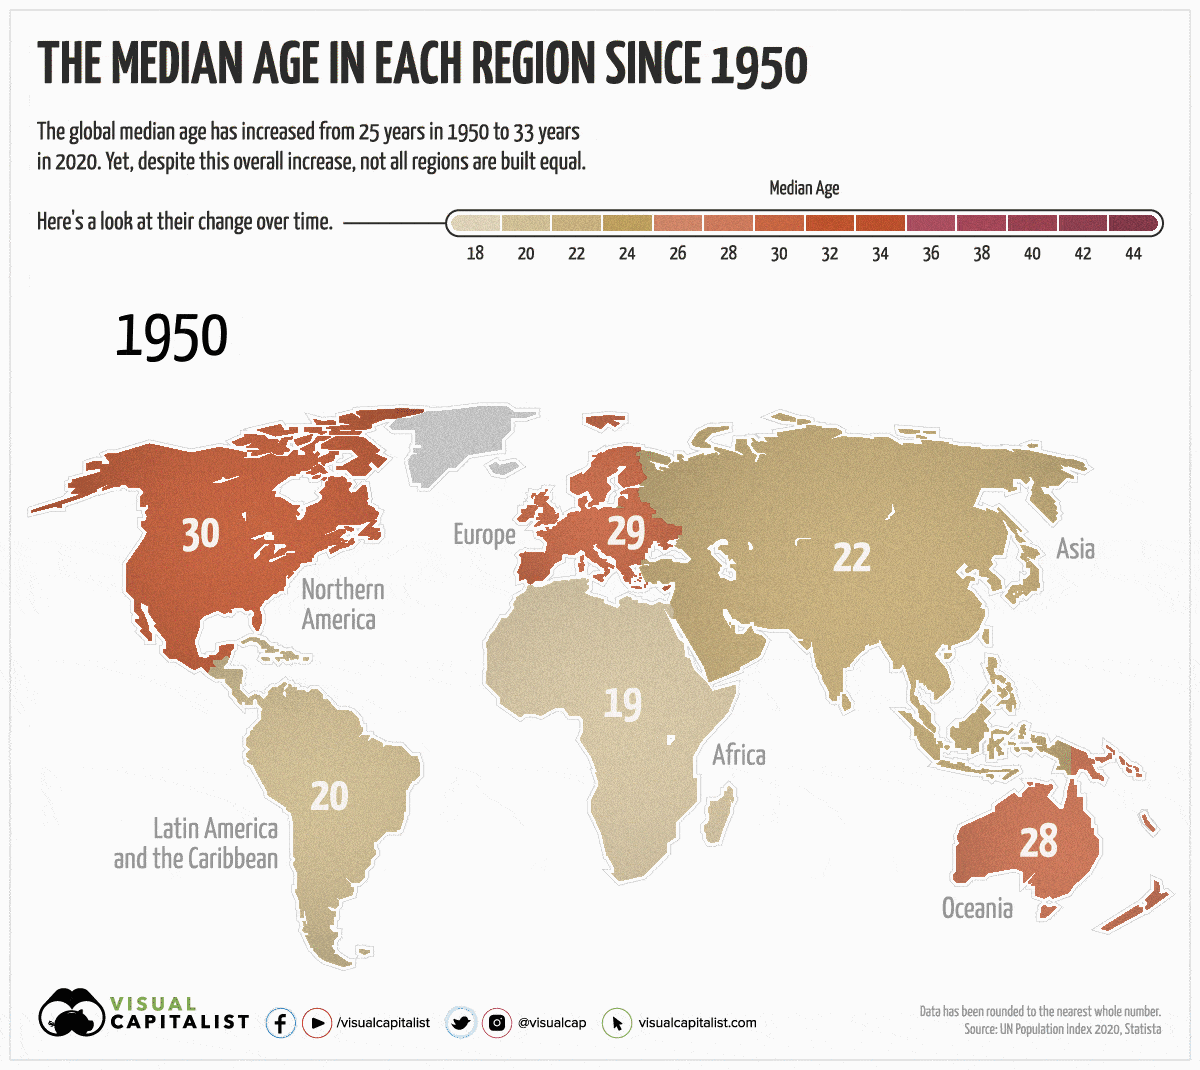 Each region median age mapped